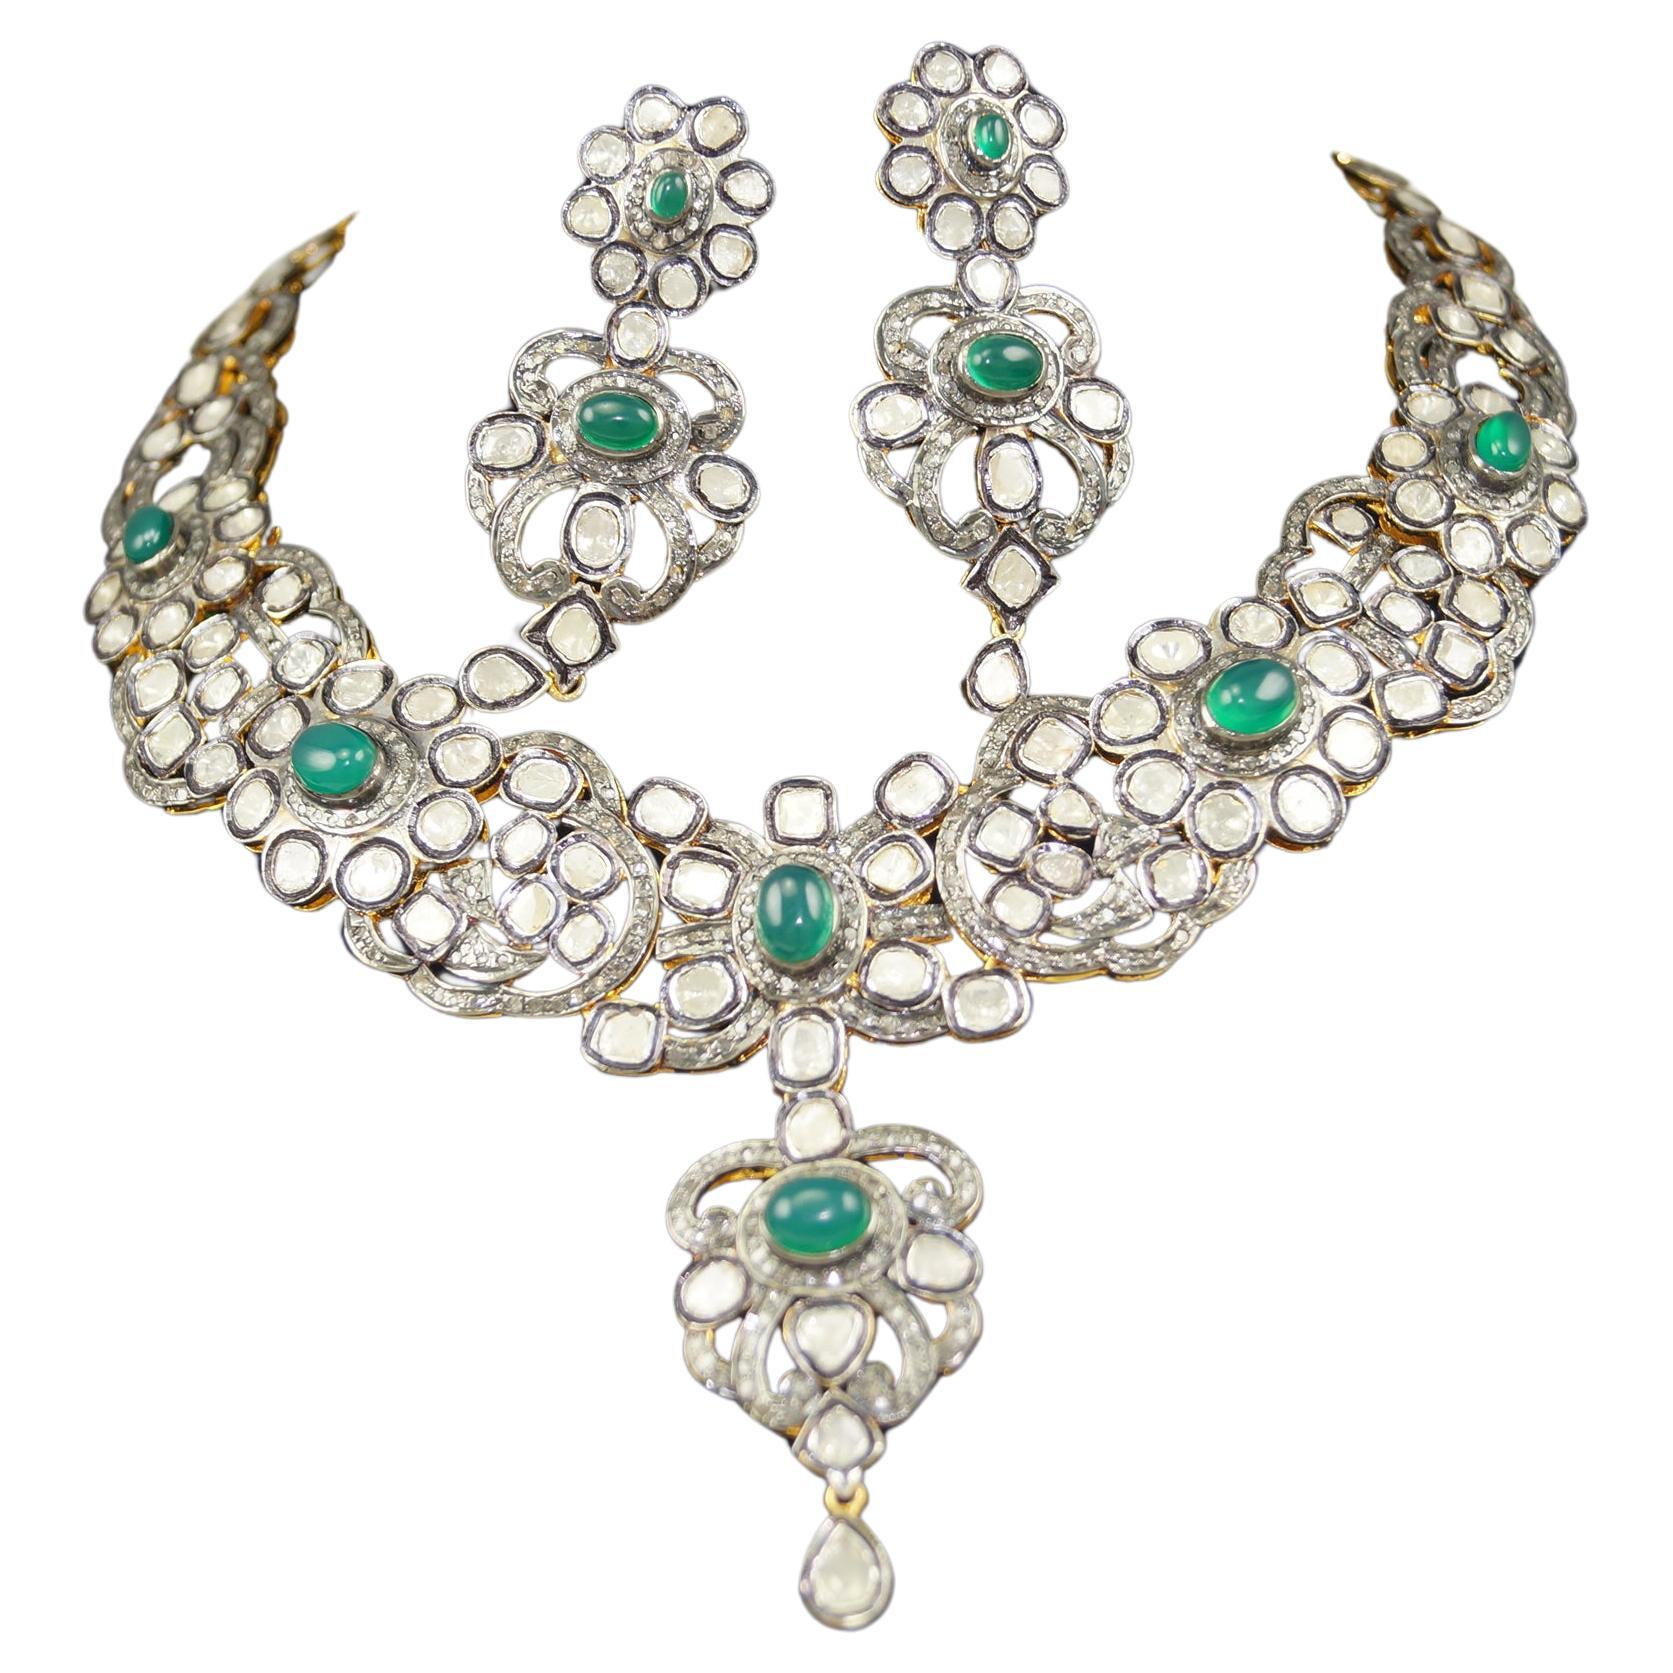 Dieses wunderschöne Floral Style-Halsketten-Set ist einzigartig. Es wurde von den feinen Kunsthandwerkern mit natürlichen echten ungeschliffenen Diamant und Mondstein erstellt. Die Edelsteine und Diamanten sind in einem floralen Muster angeordnet.